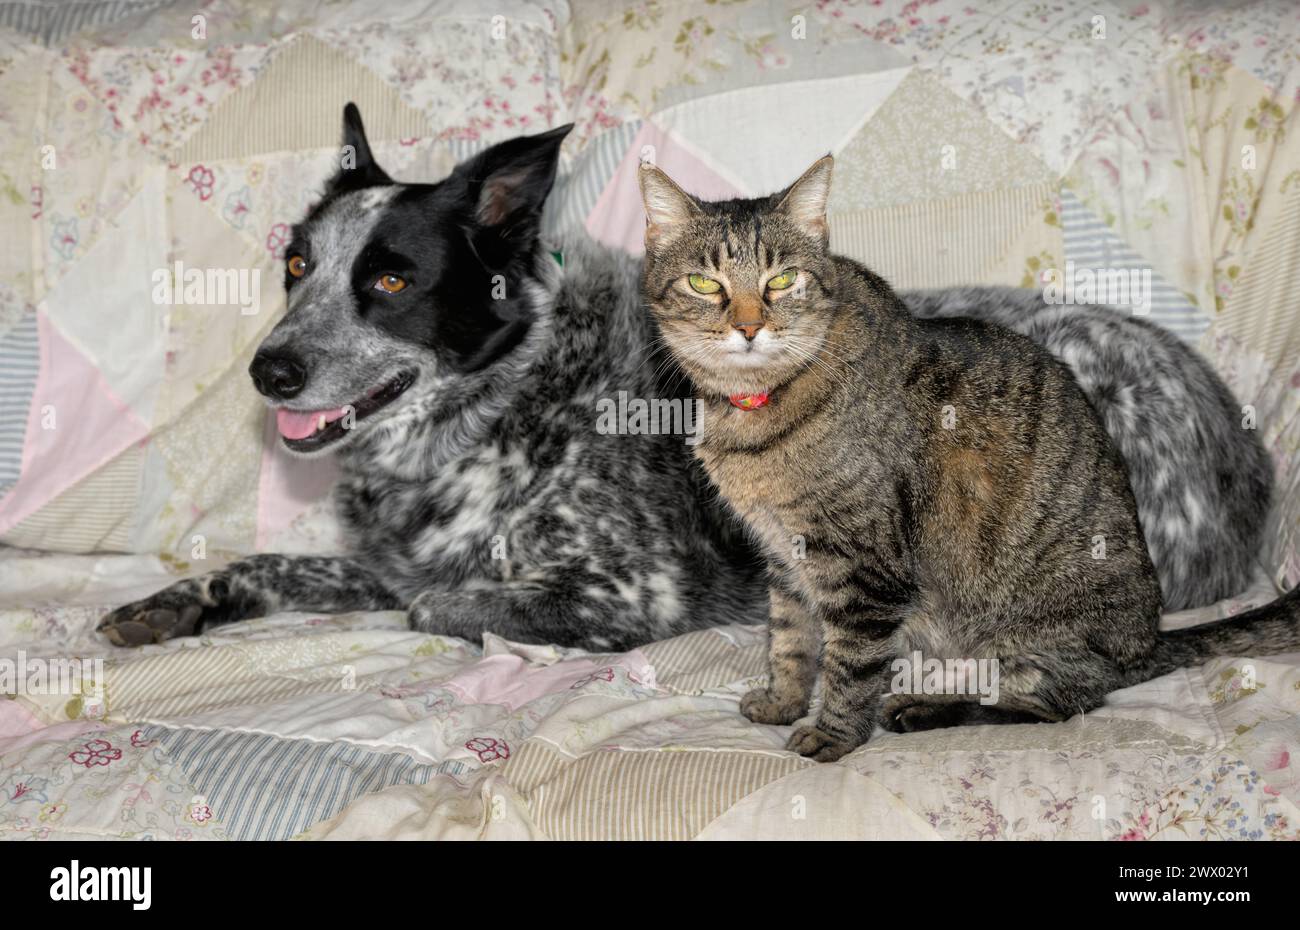 Alte braune Tabbykatze, die neben einem Rücken sitzt, und weiß gefleckter Hund auf einer Couch Stockfoto